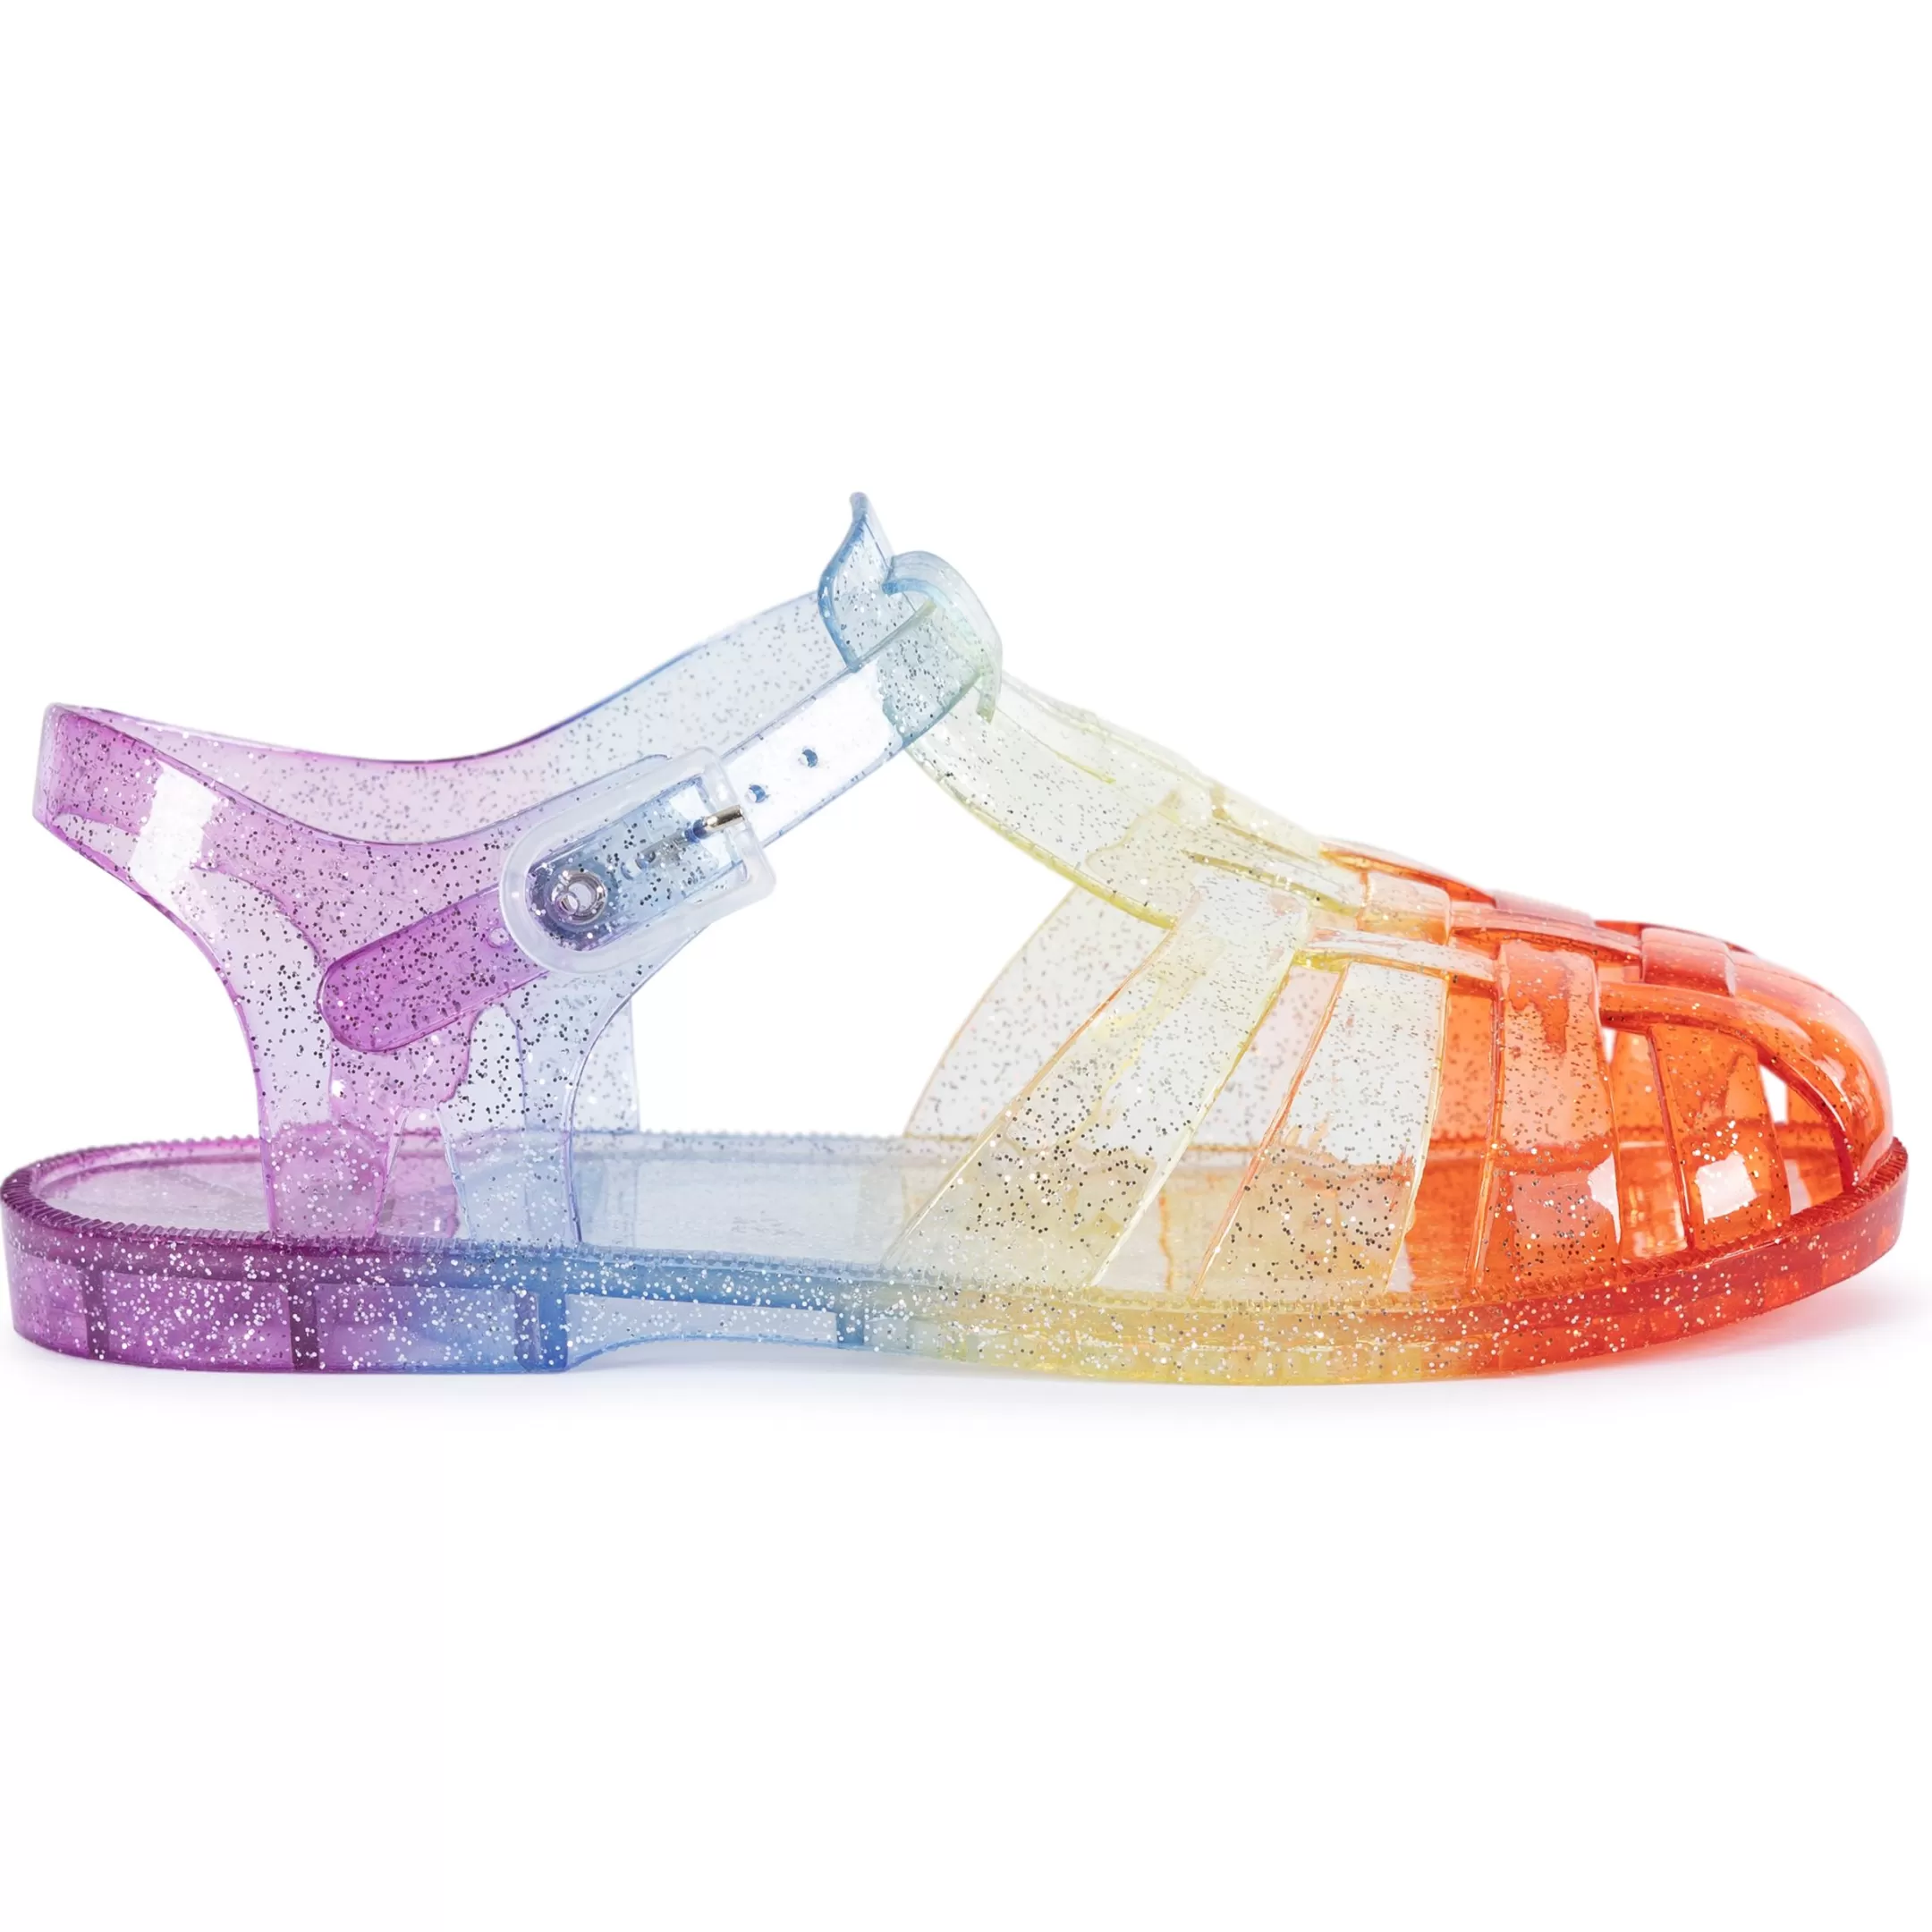 Kids' Sandals Jelly | Trespass Hot